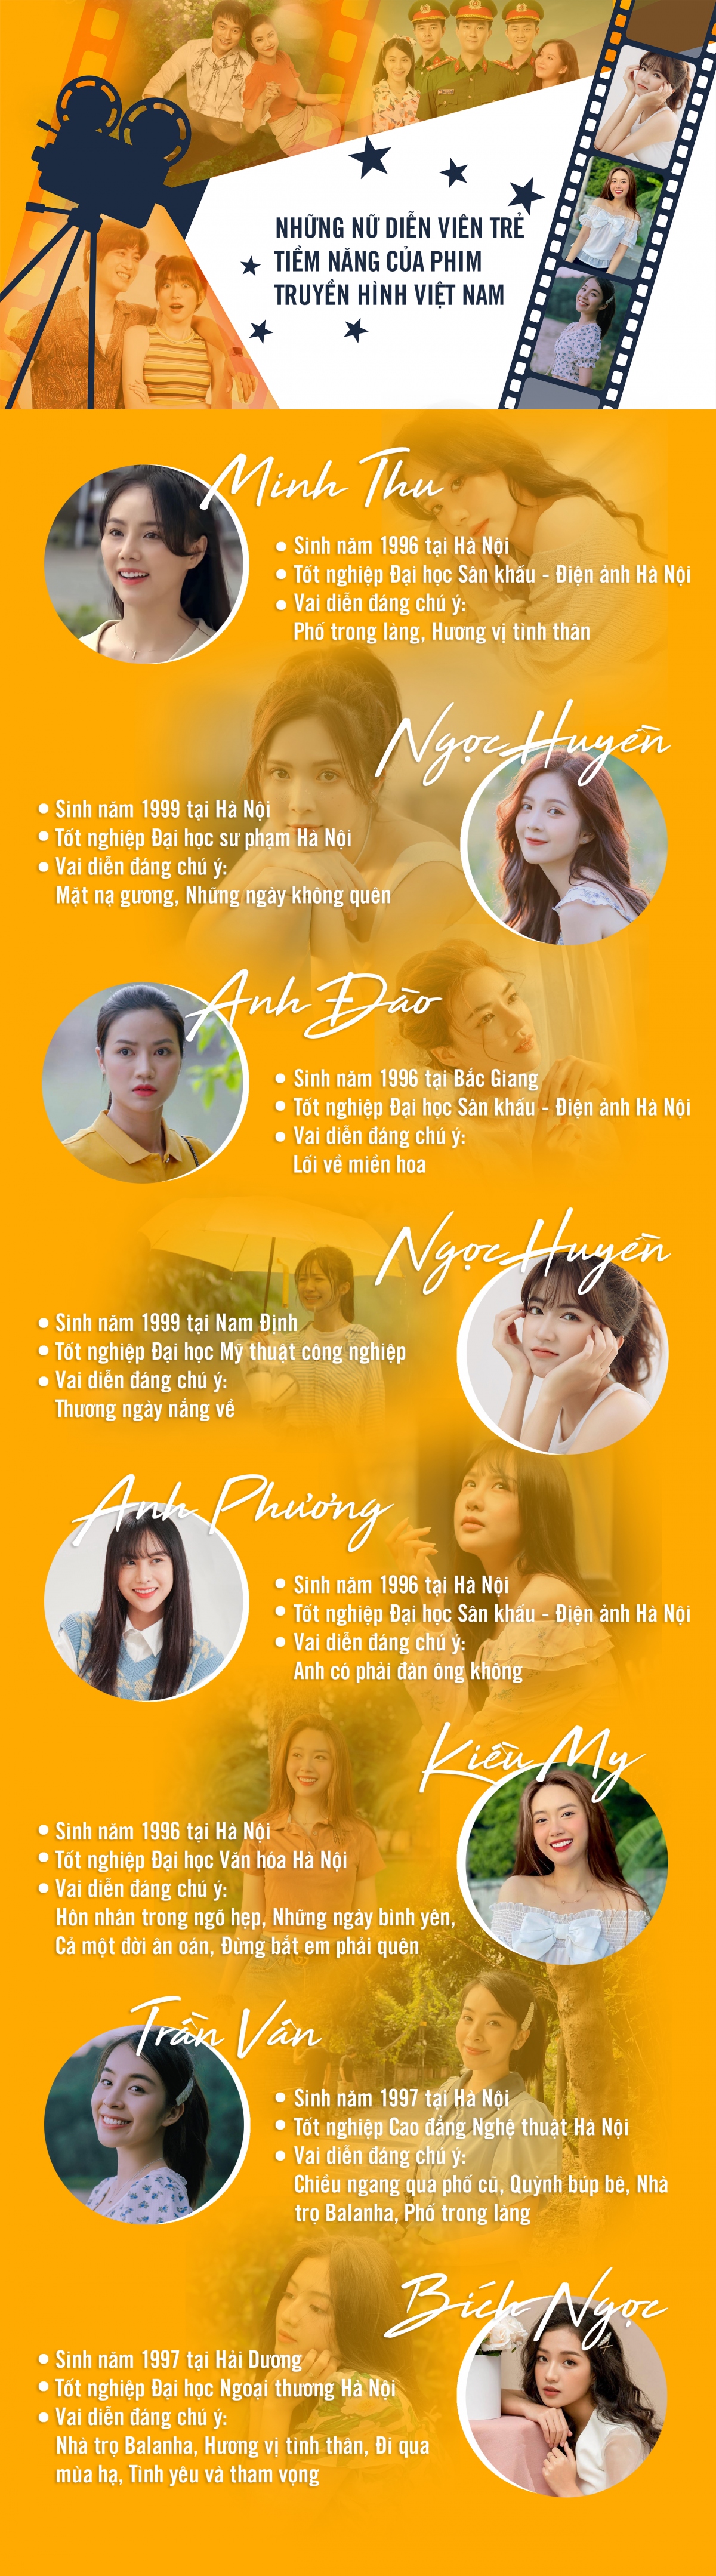 Những nữ diễn viên trẻ tiềm năng của phim truyền hình Việt Nam